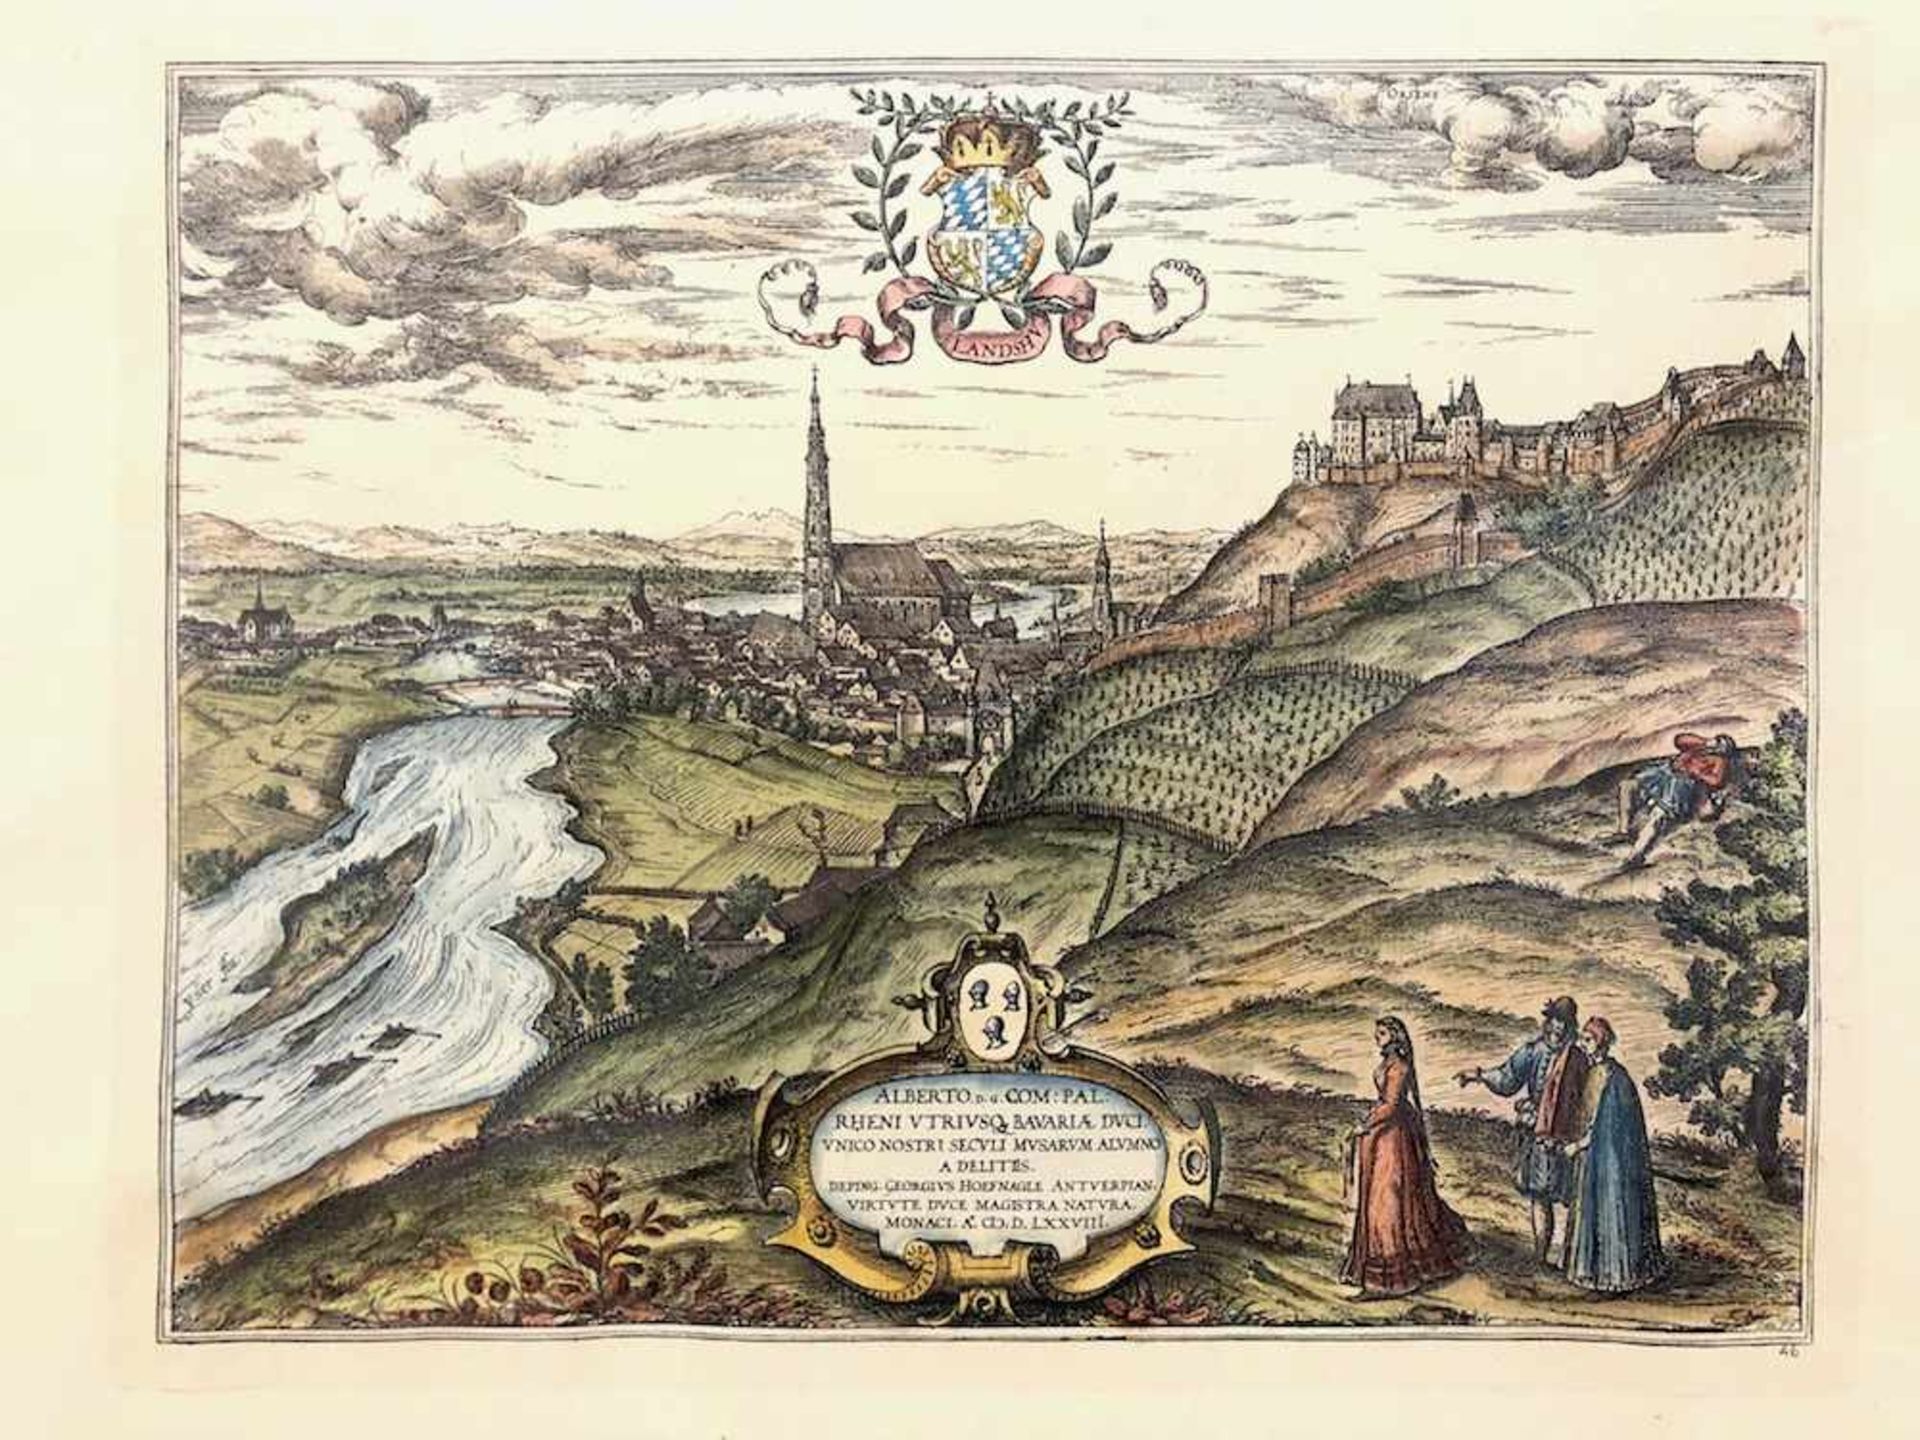 Georgius Hoefnagle: Prospect der Stadt Landshut. Abdruck frühes 20. Jh., nach Vorlage 1578.